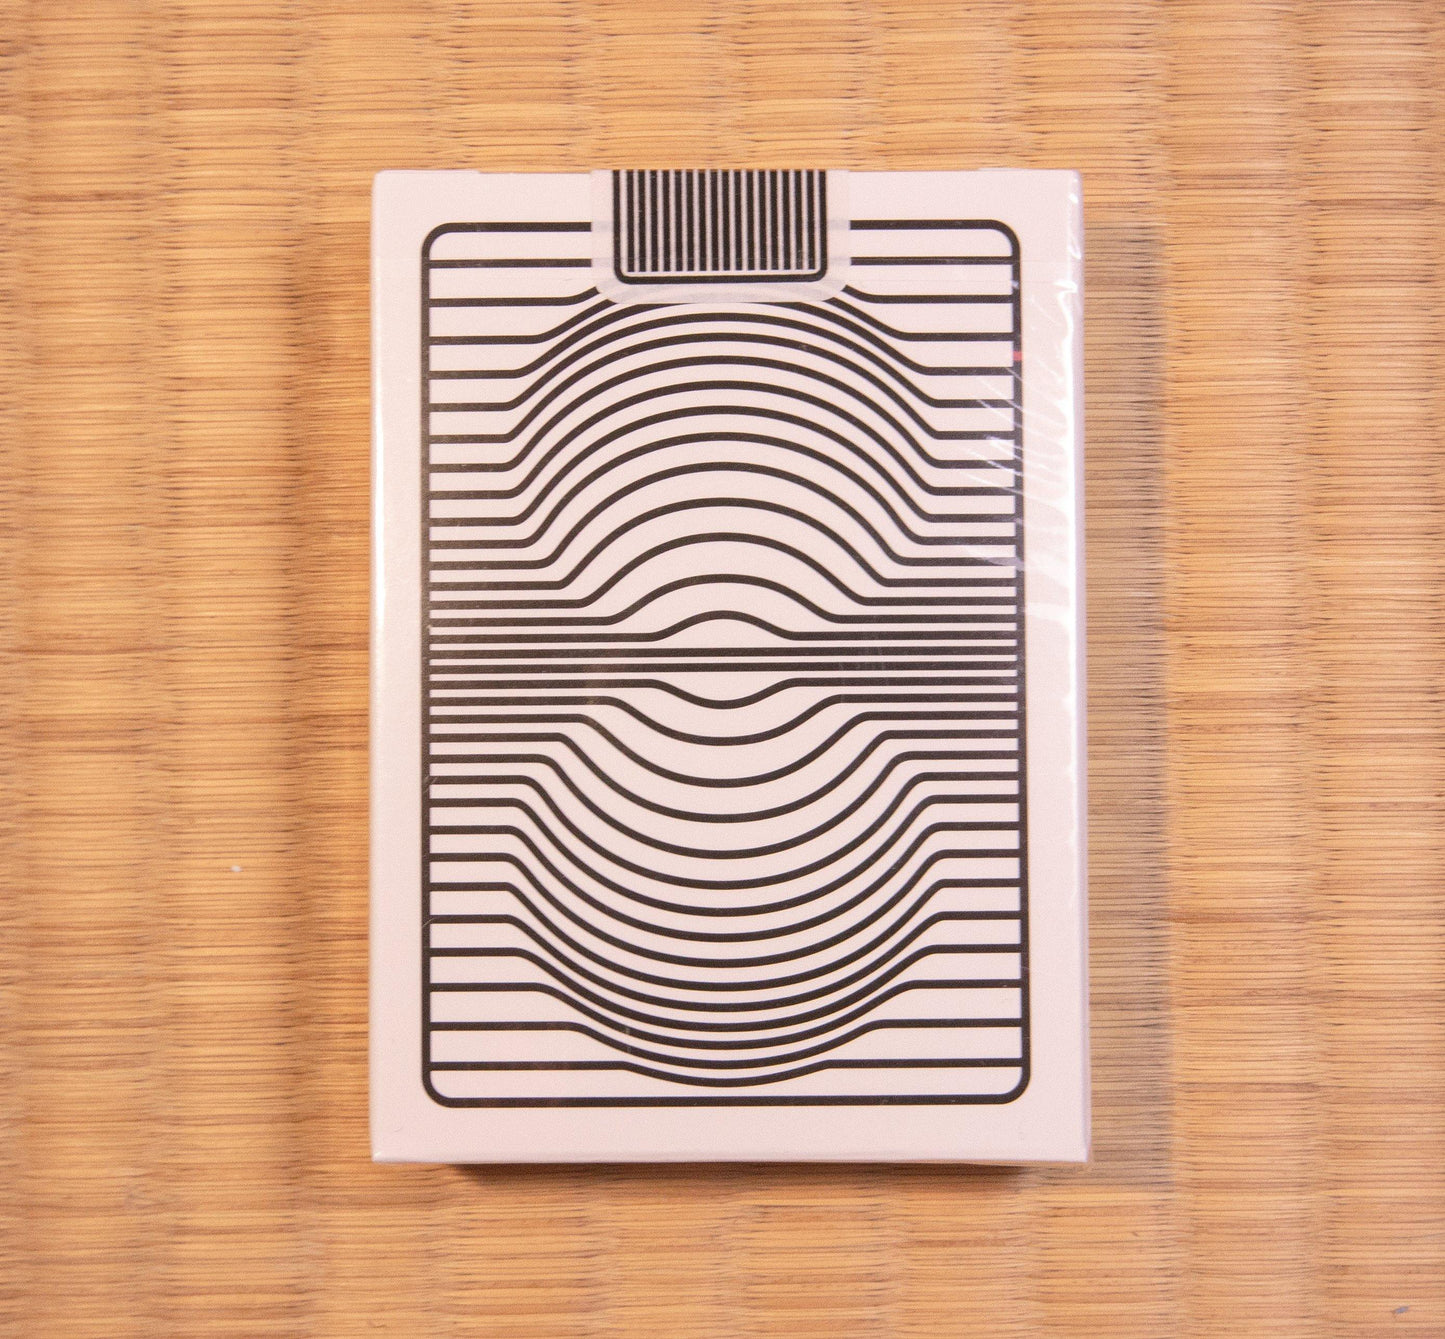 Stripe Playing Cards by Dealersgrip - Deckita Decks